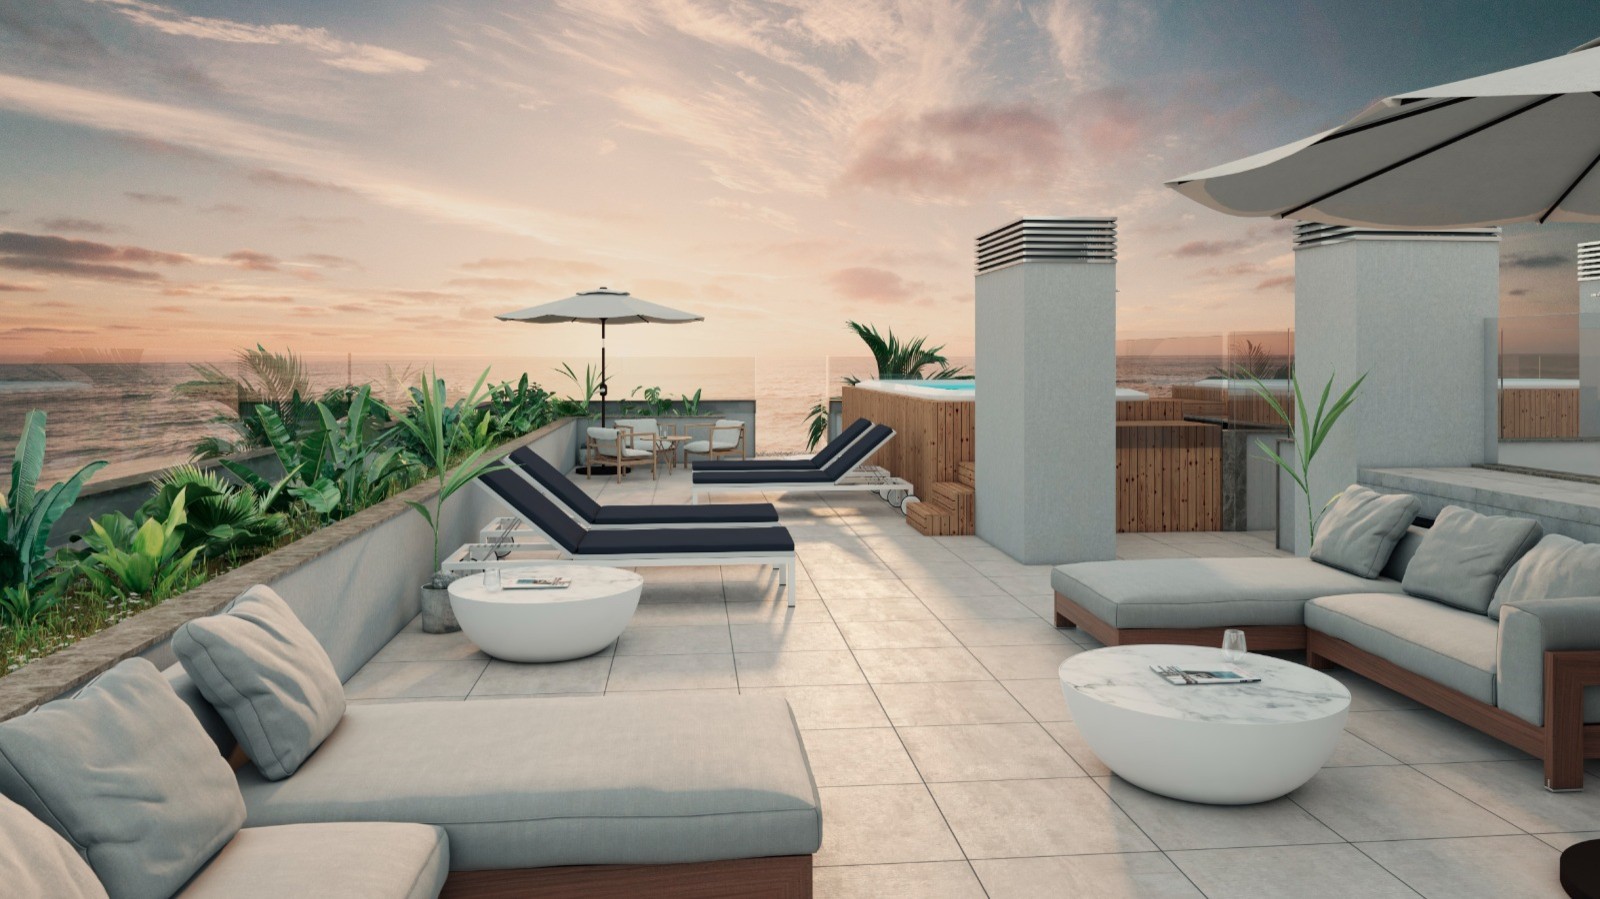 Apartamento T4 com vista de mar, terraço e piscina, para venda, Gaia, Portugal_250332